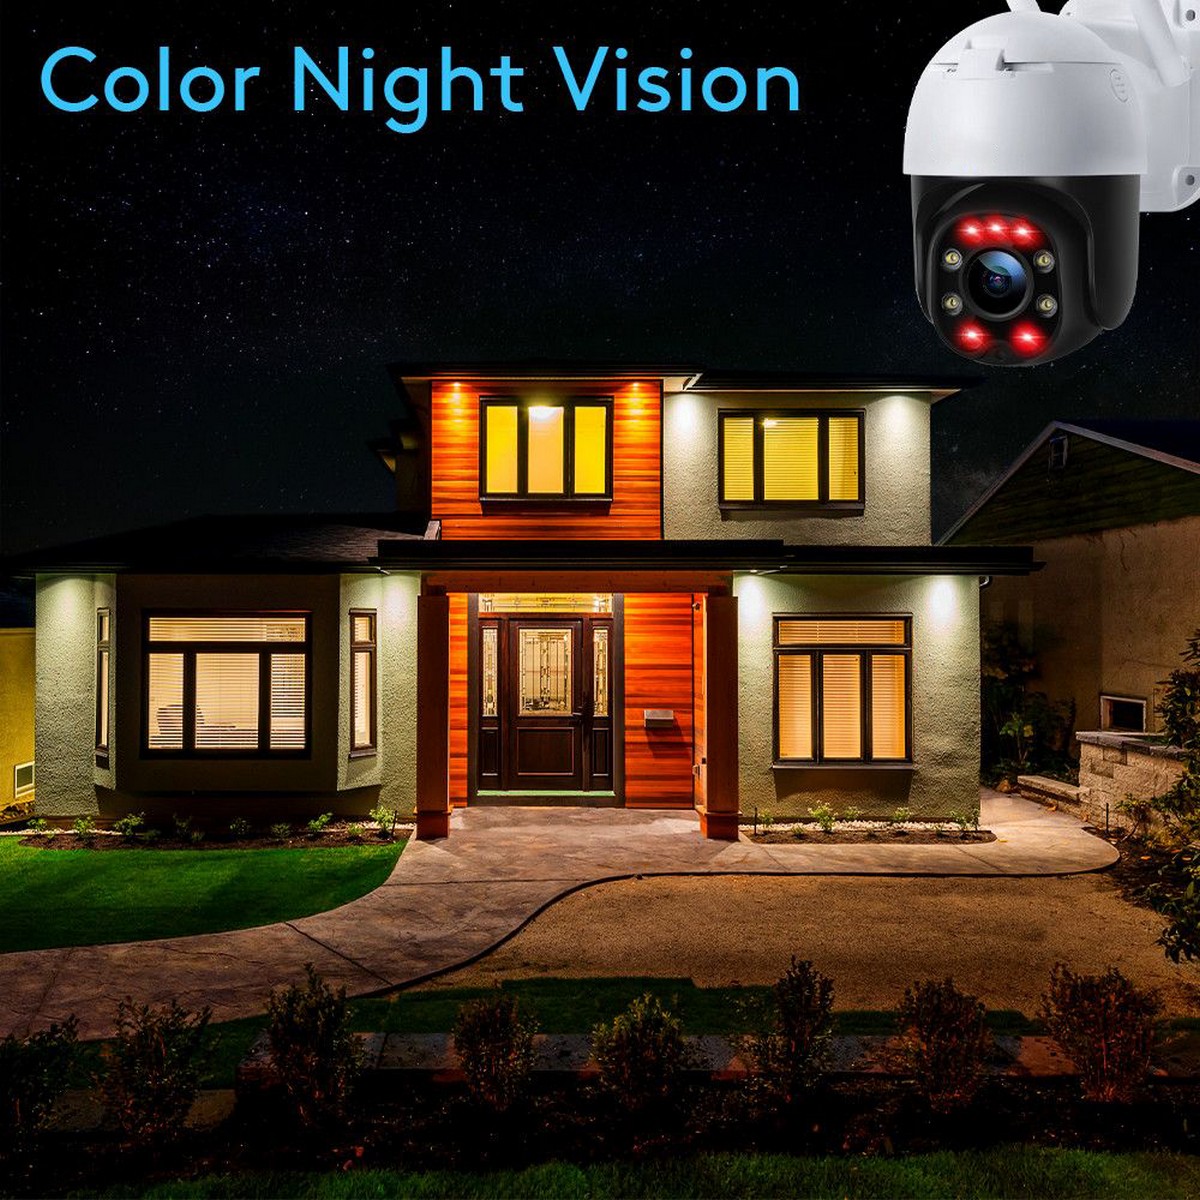 κάμερα ασφαλείας νυχτερινής όρασης ip - έγχρωμα led υπέρυθρης ακτινοβολίας